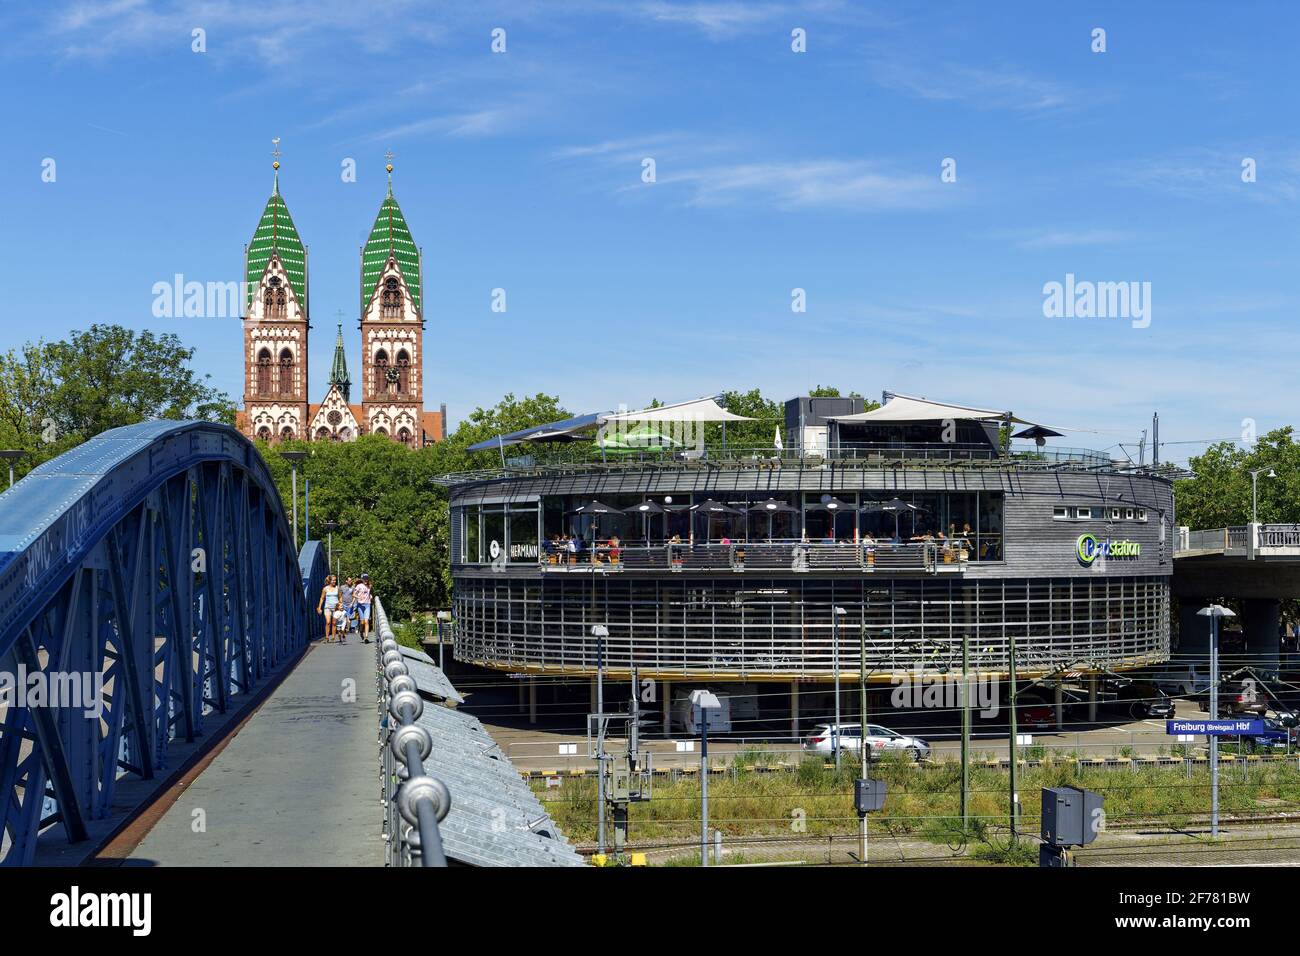 Germania, Baden Wurttemberg, Freiburg im Breisgau, il ponte blu (ponte wilwili), il Sacro cuore di Gesù Chiesa (Herz Jesu kirche) e la stazione di bicicletta chiamata Mobile presso la stazione centrale Foto Stock